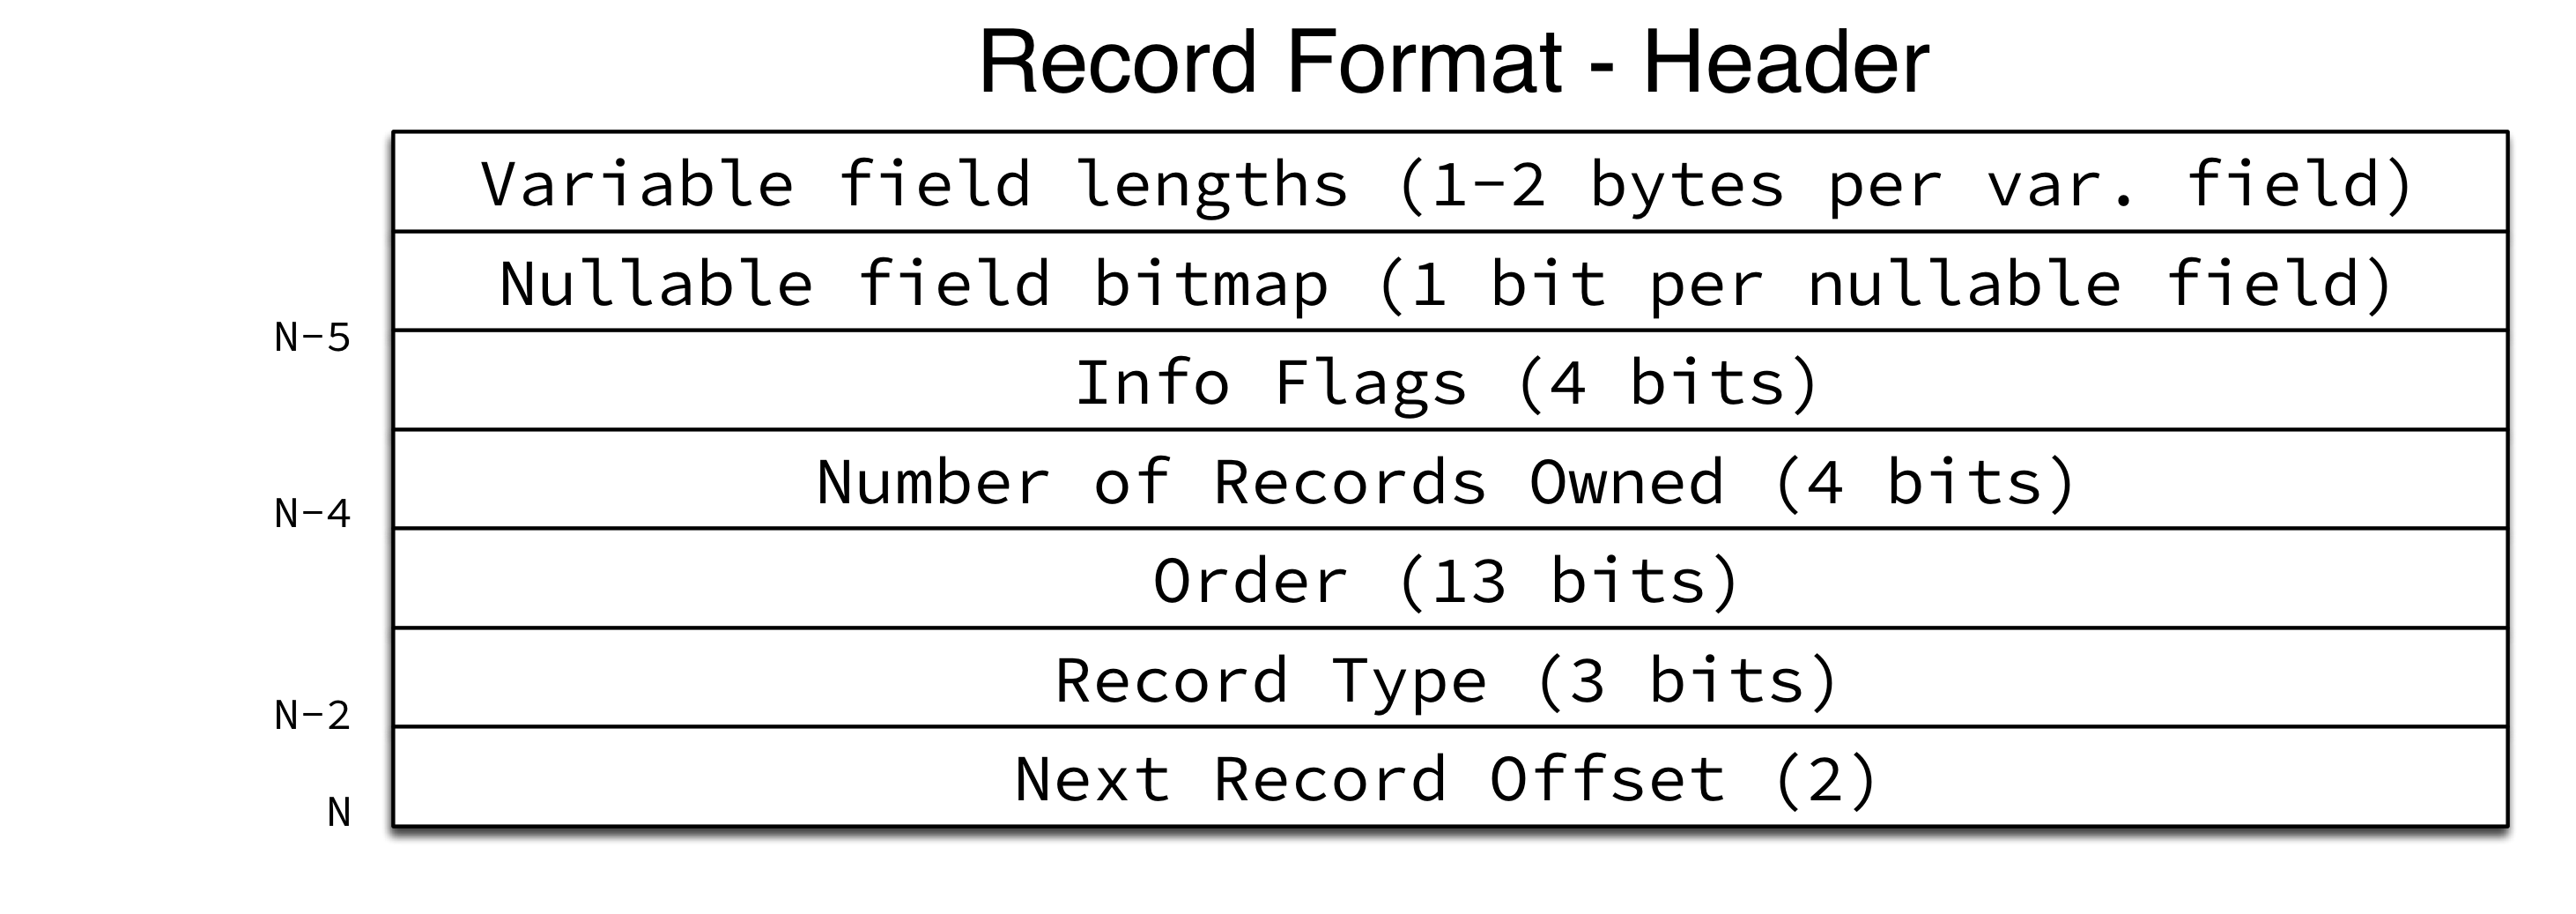 Record Format - Header